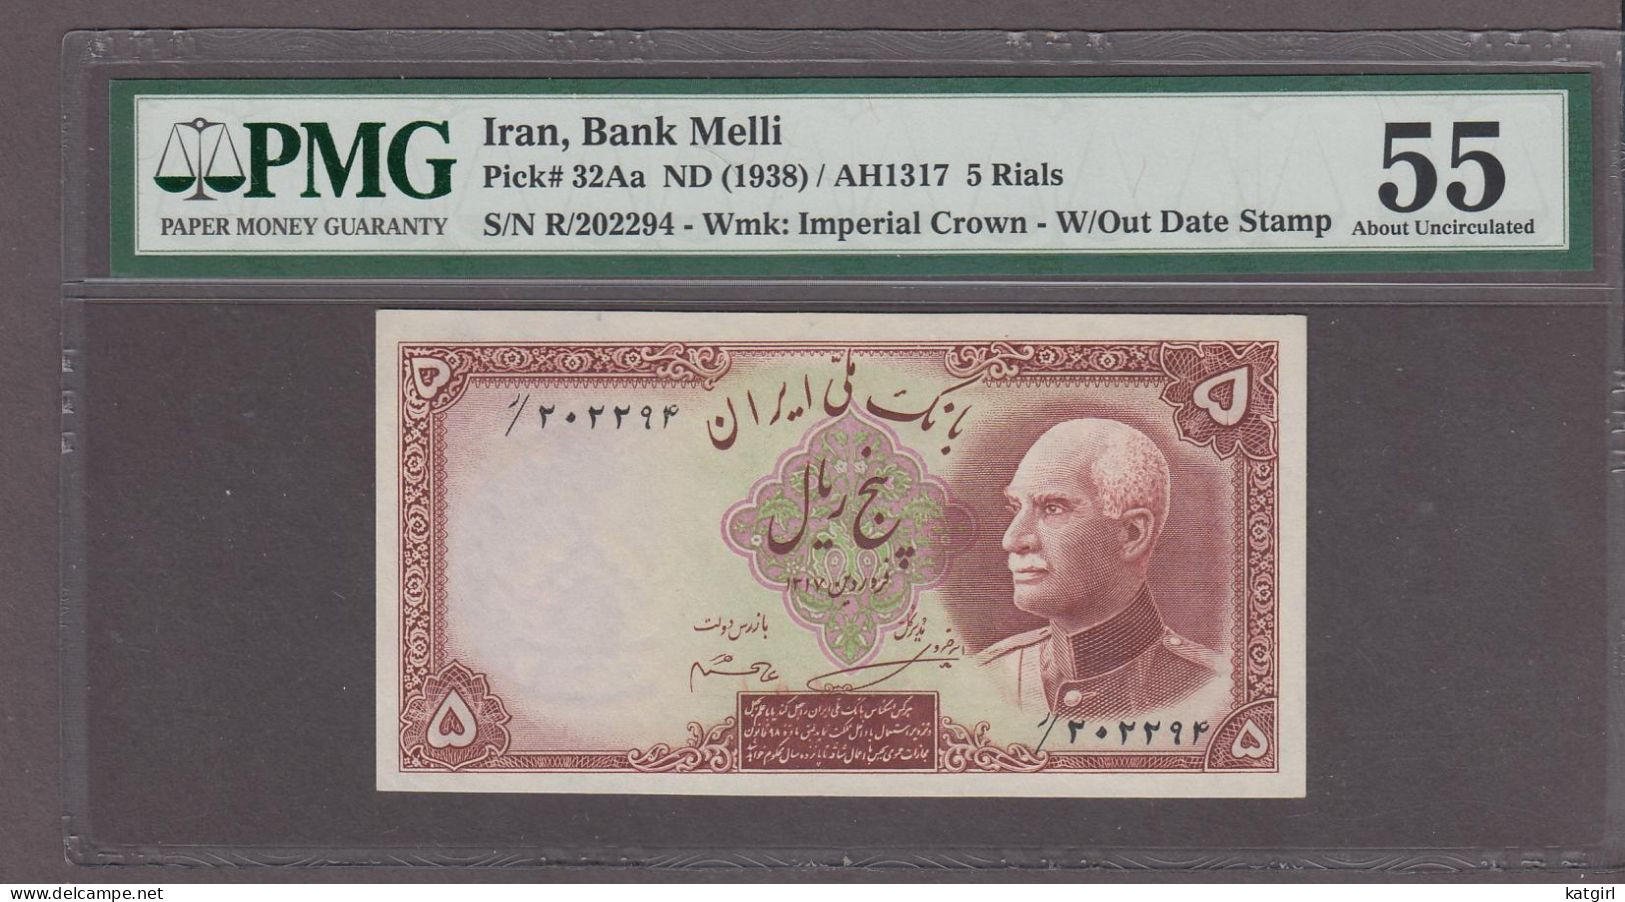 Iran, Bank Melli 5 Rials Banknote Pick# 32Aa ND (1938) / AH1317 AUNC PMG 55 - Irán